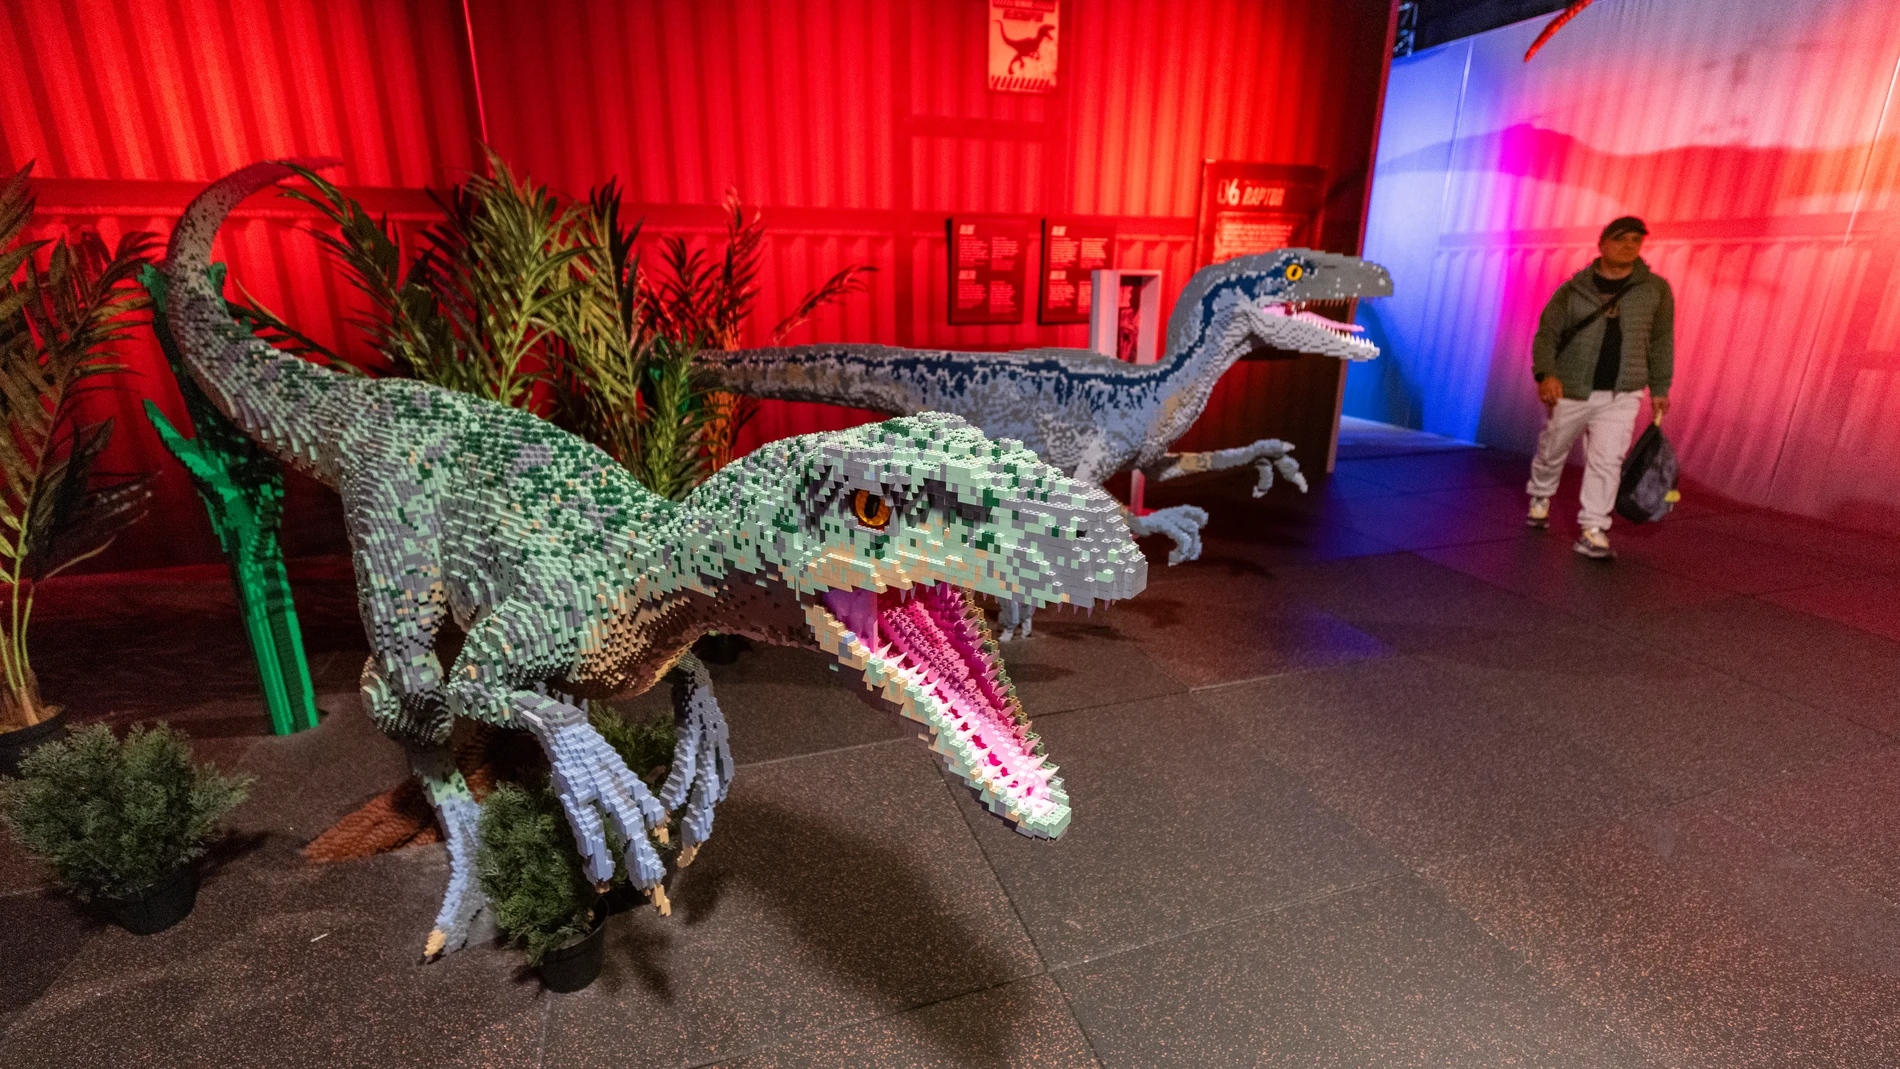 Jurassic World by Brickman es la mayor exposición LEGO® jamás mostrada en España ©Gonzalo Pérez Mata